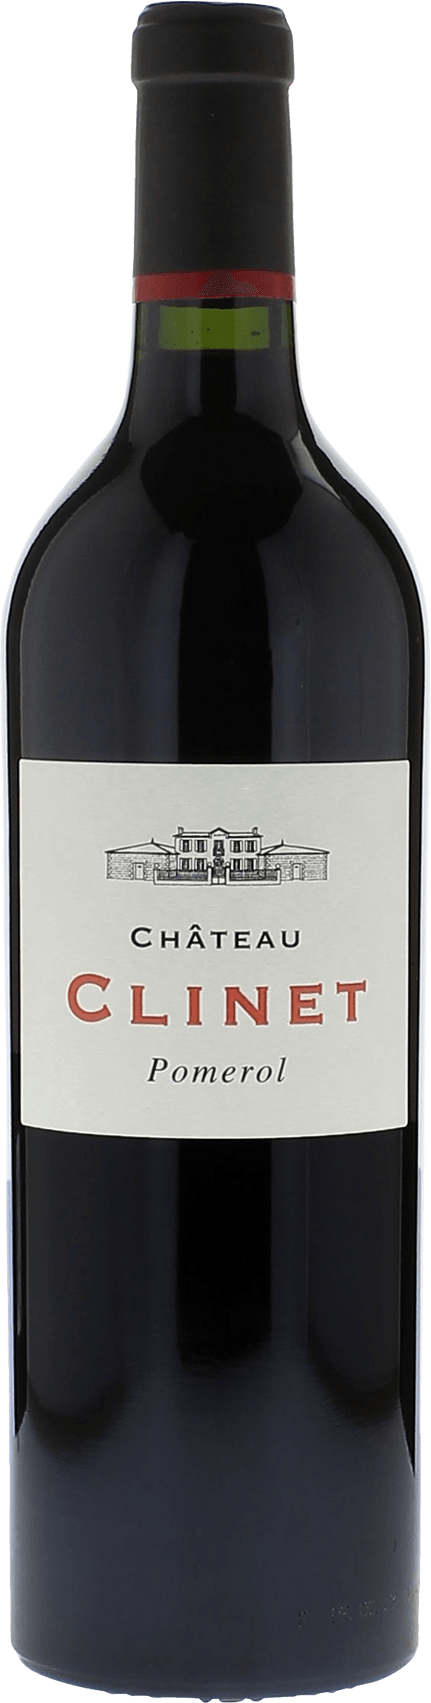 Clinet 1990  Pomerol, Bordeaux rouge